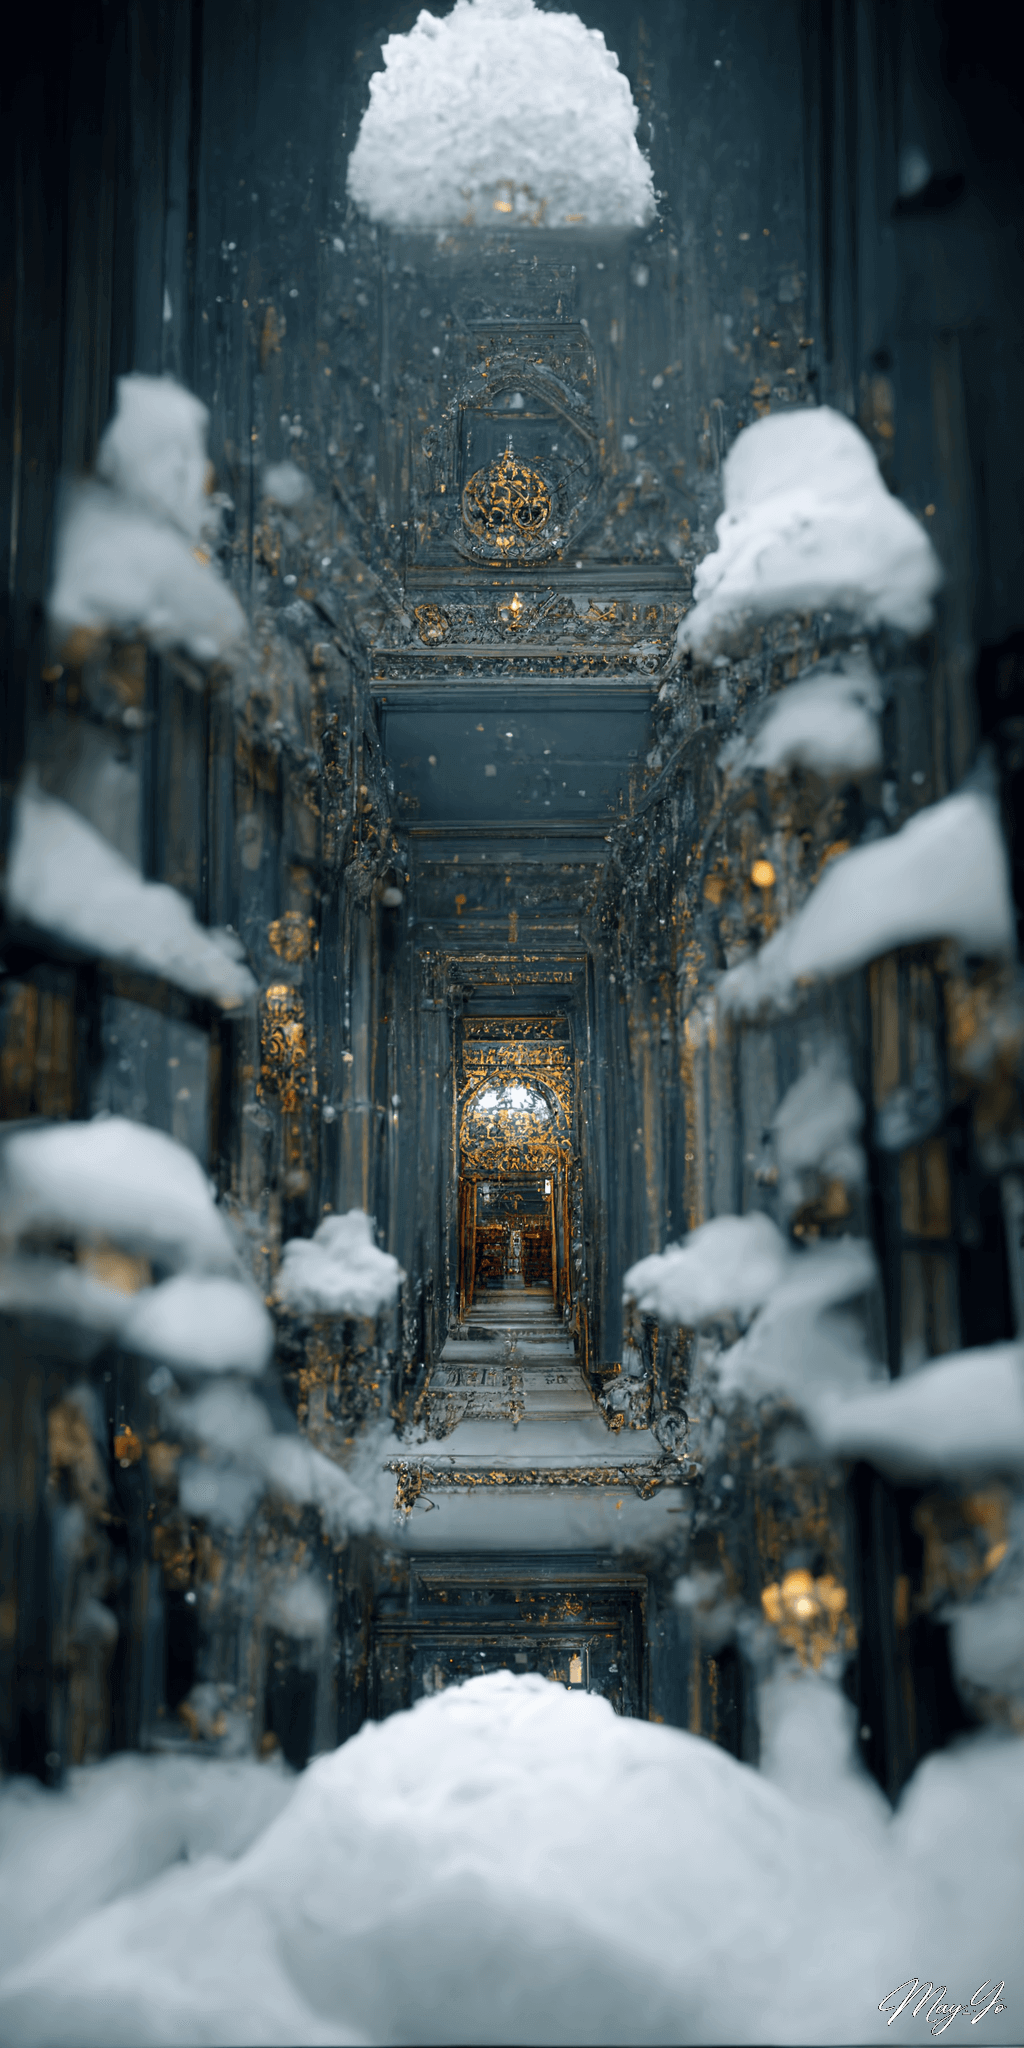 深い雪に覆われた魔法の王宮の壁紙イラスト 雪に埋め尽くされたお城の待受 AIイラスト待受 縦長画像 snow magical castle illustration frost palace